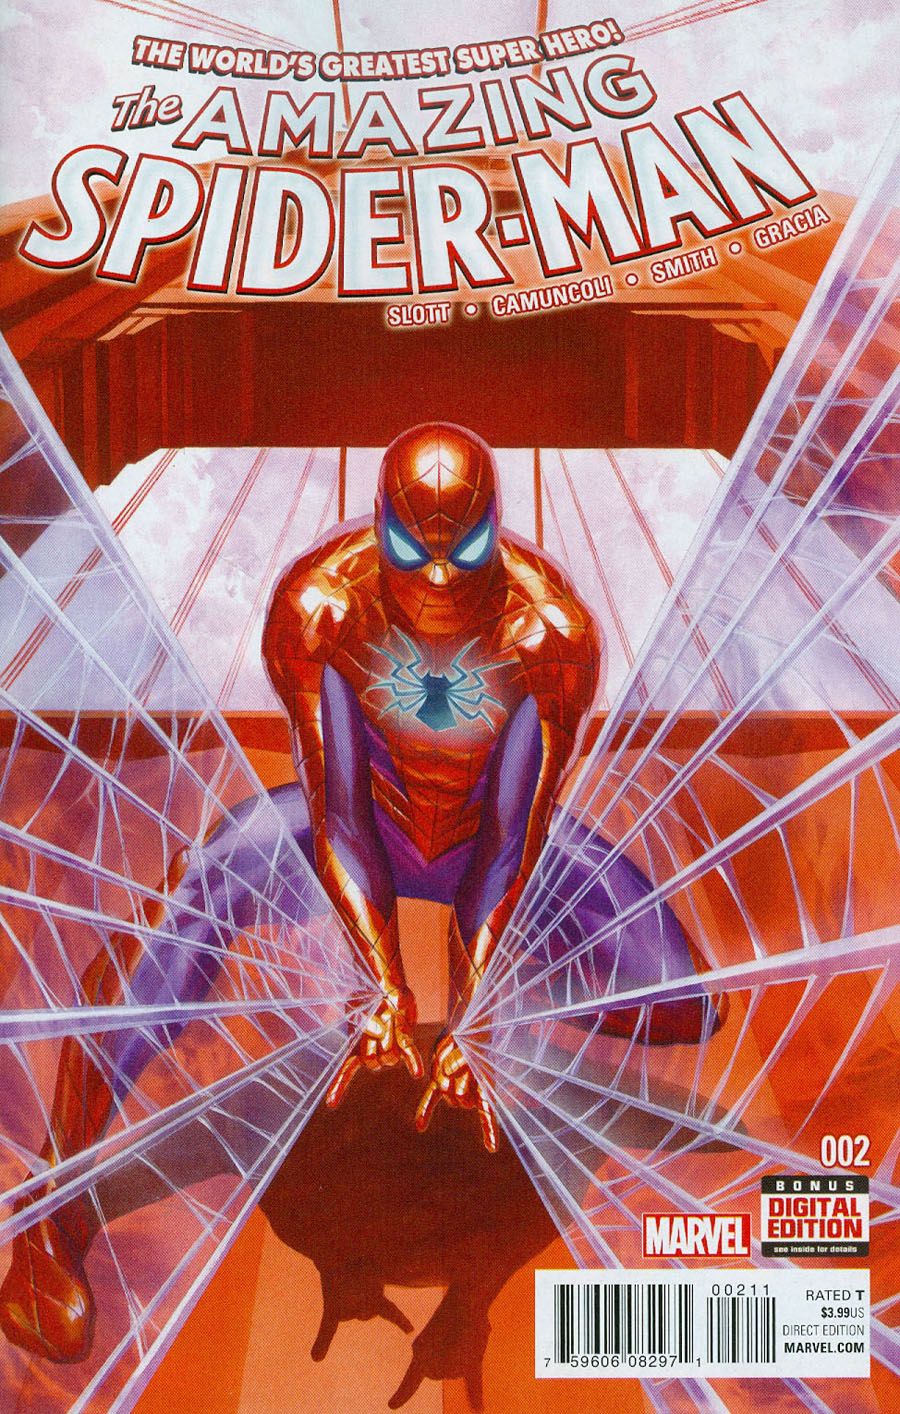 Amazing Spider-man #11 Vol 4 Marvel COMICS COVER A 1ST PRINT SLOTT